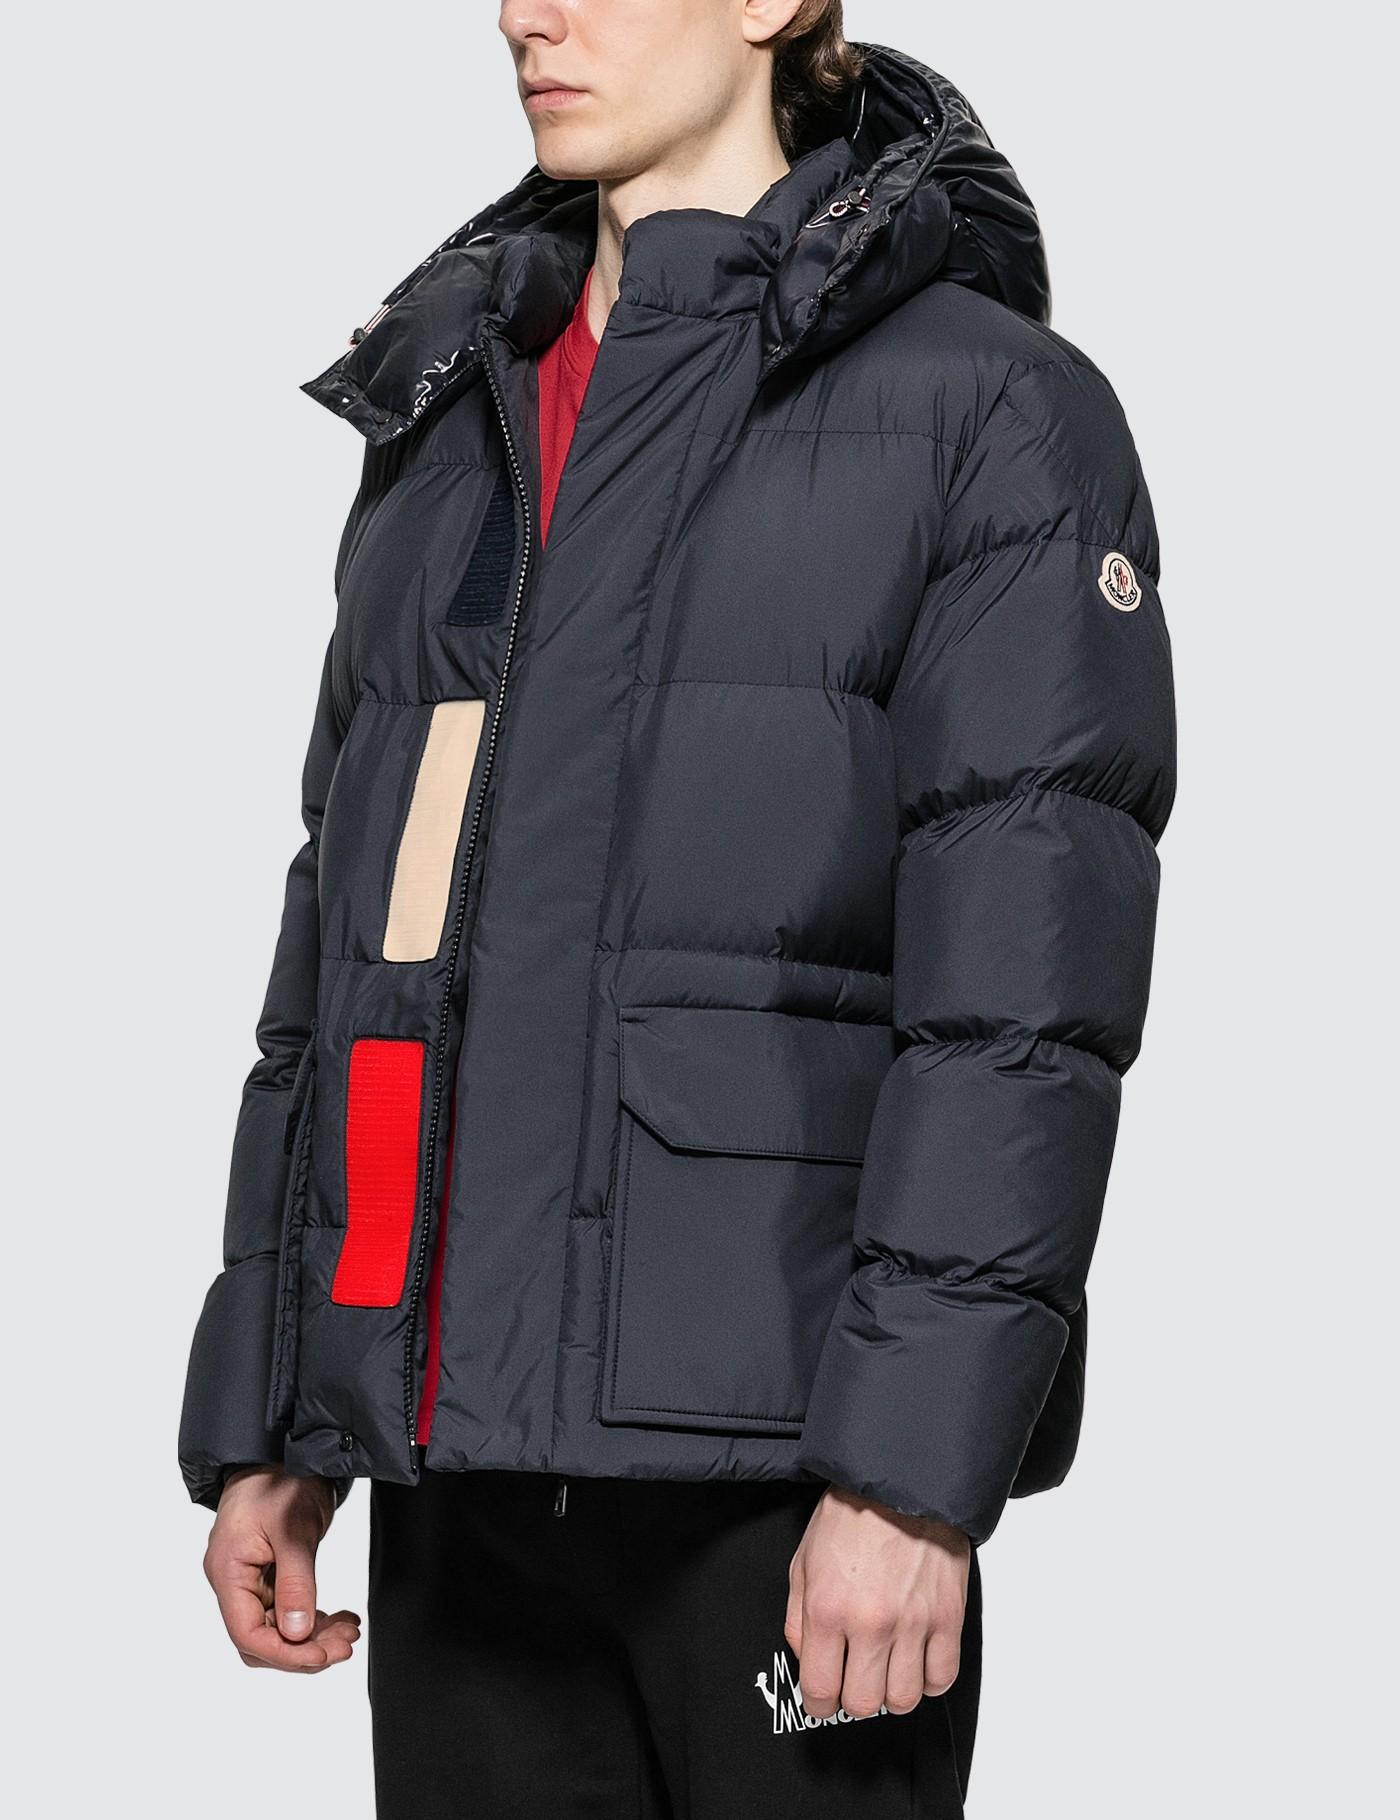 moncler jacket removable hood